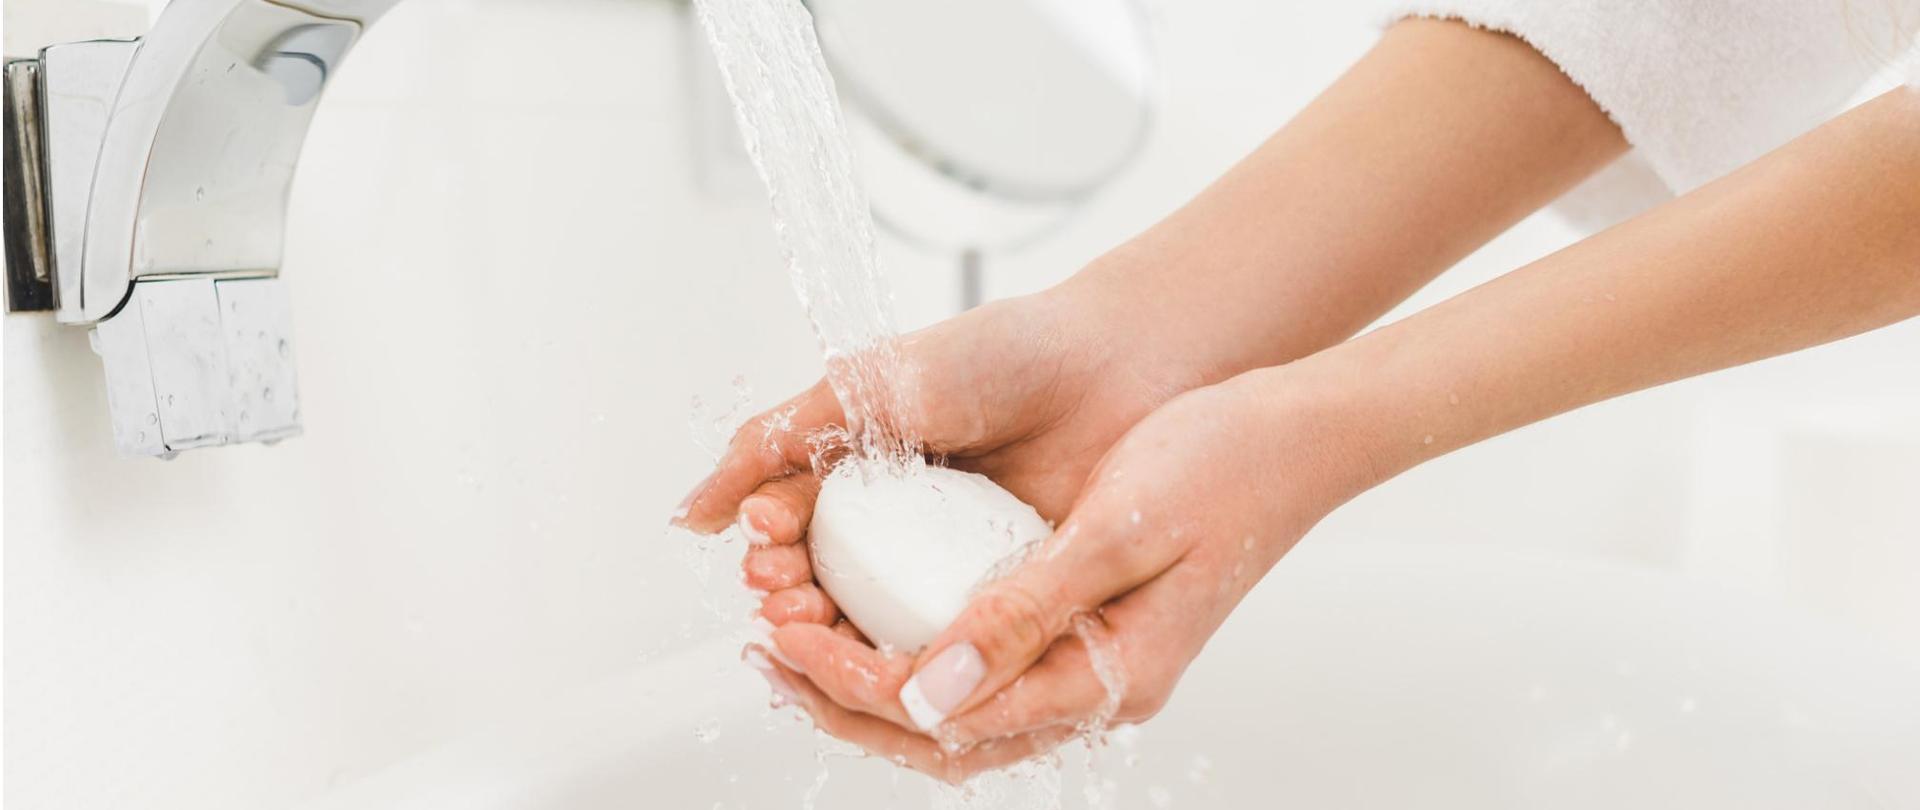 Na zdjęciu są widoczne dłonie kobiety, które trzyma pod strumieniem wody. W dłoniach ma mydło.